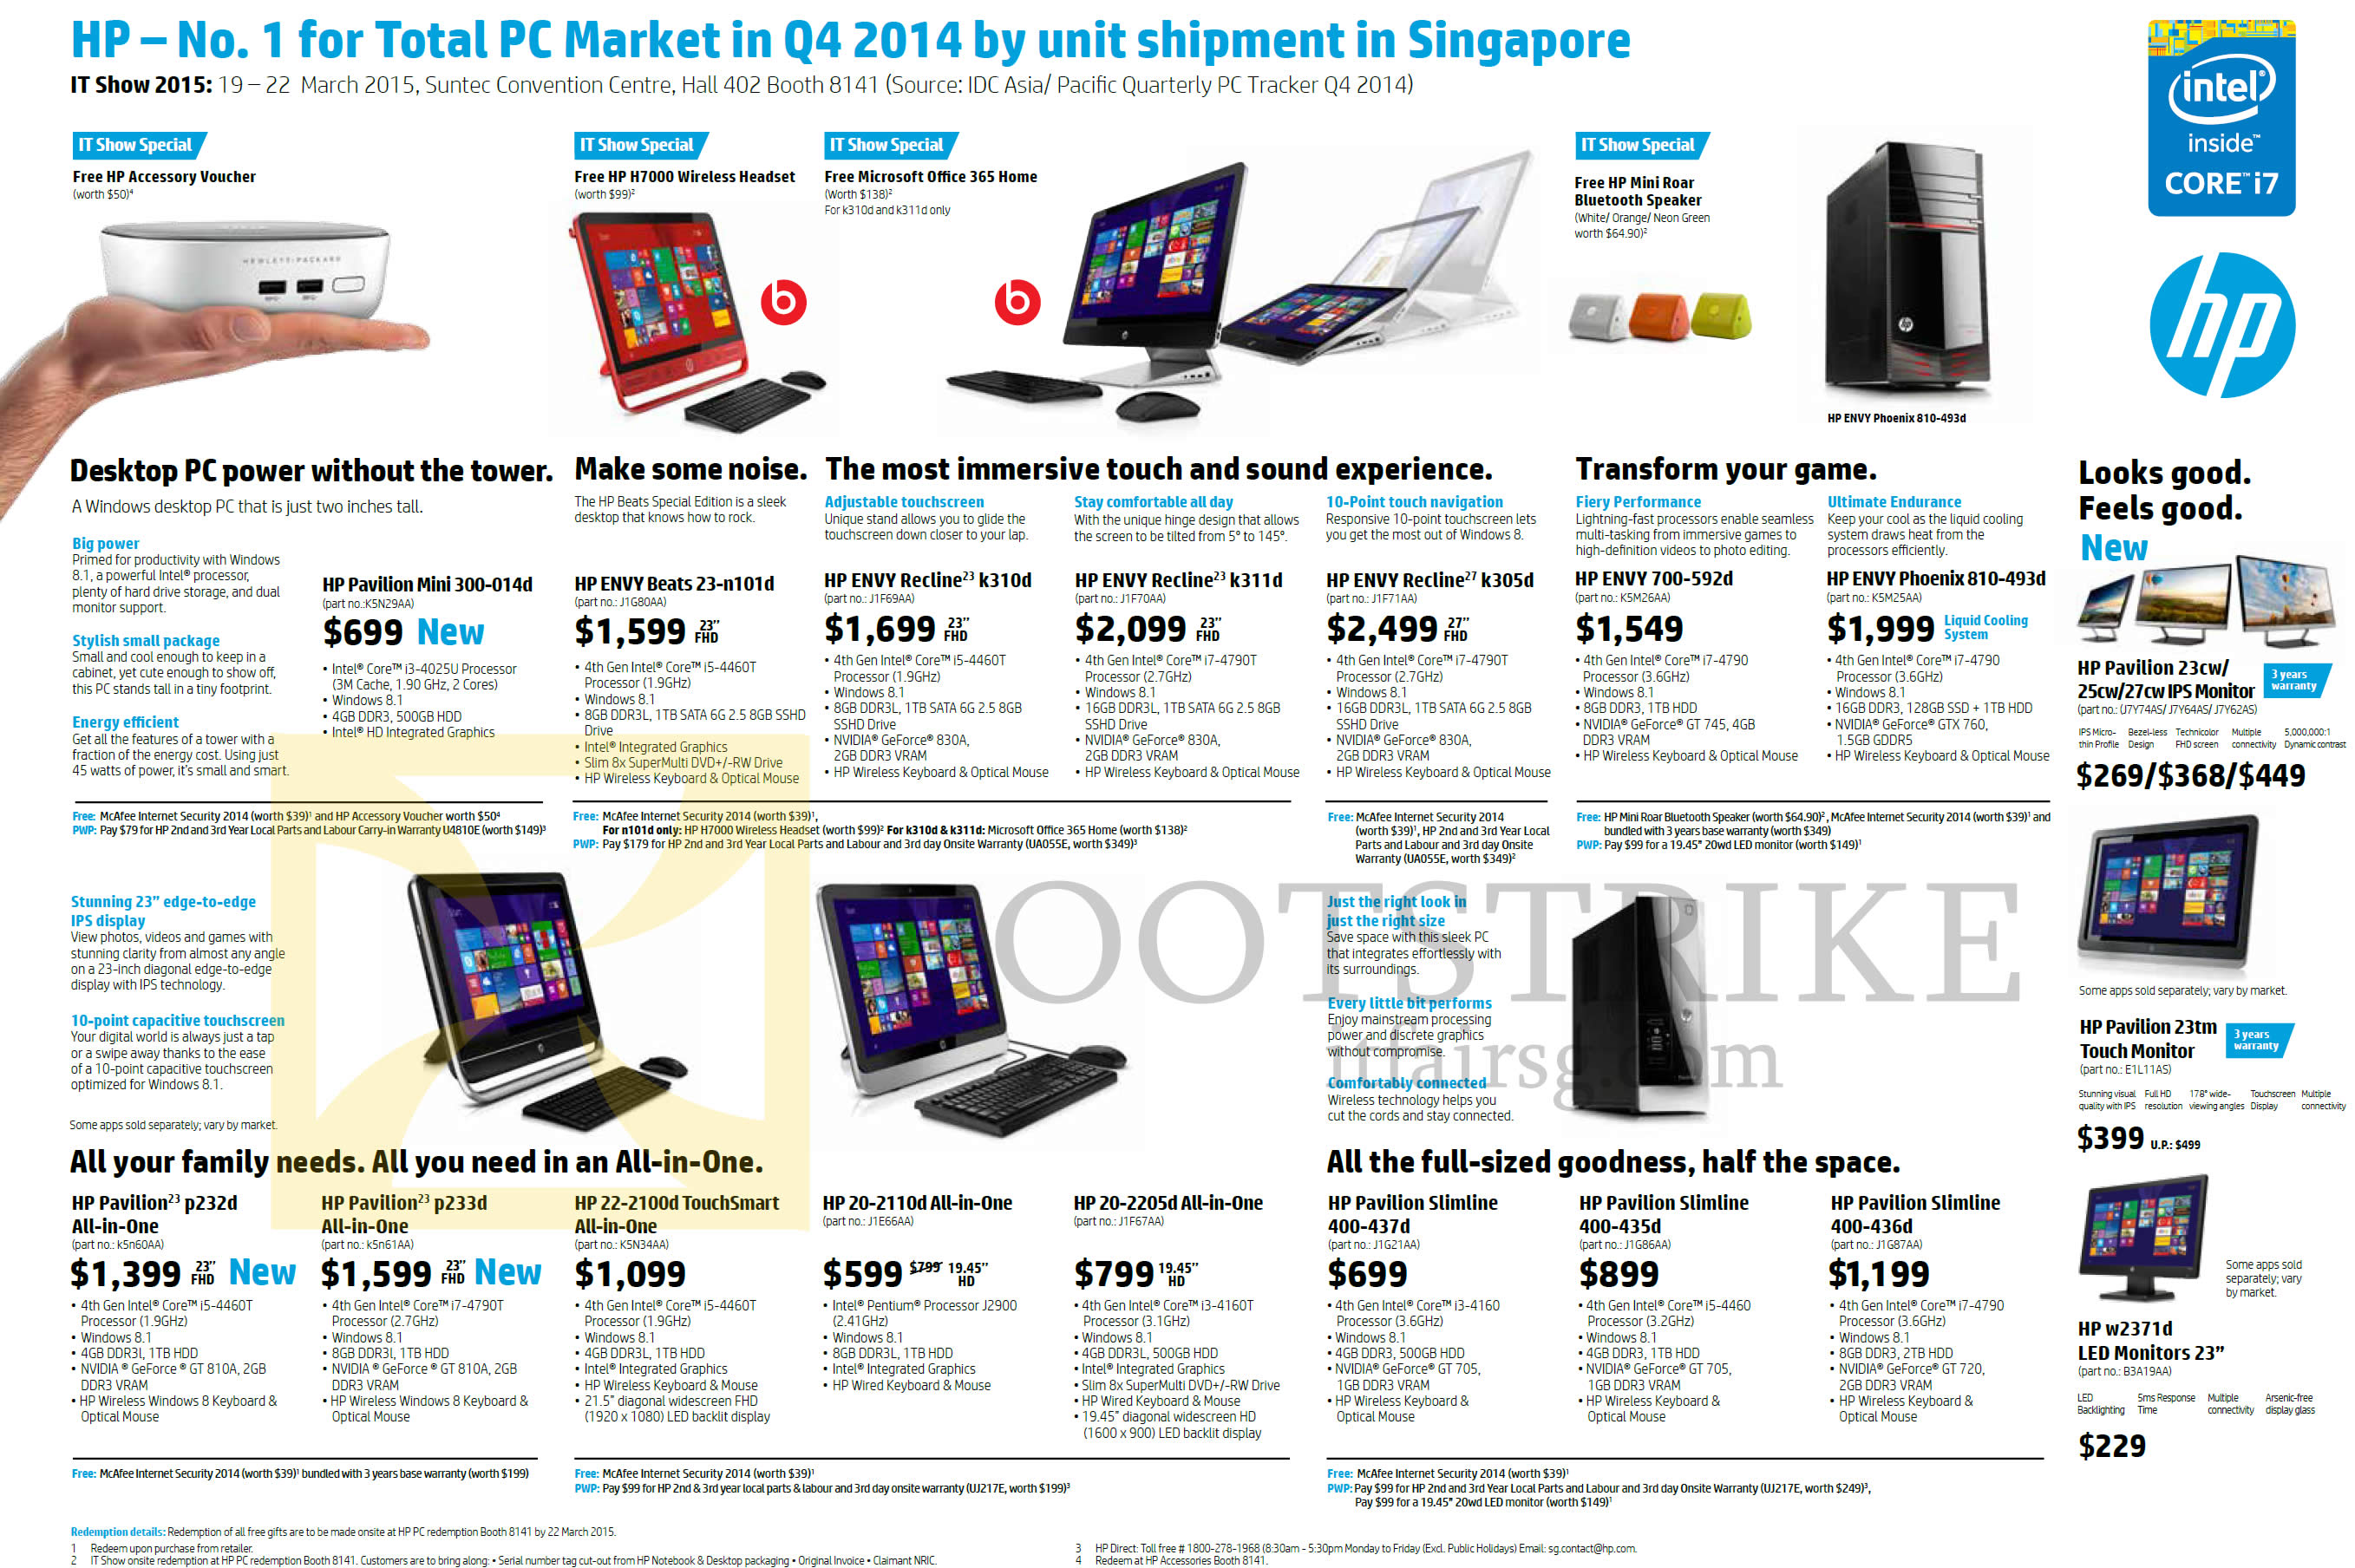 IT SHOW 2015 price list image brochure of HP AIO Desktop PCs Pavilion Mini Envy Recline Phoenix TouchSmart Slimline, 23-n101d, K310d, K311d, K305d, 700-592d, 810-493d, 23tm, W2371d, 400-436d 435, 437d